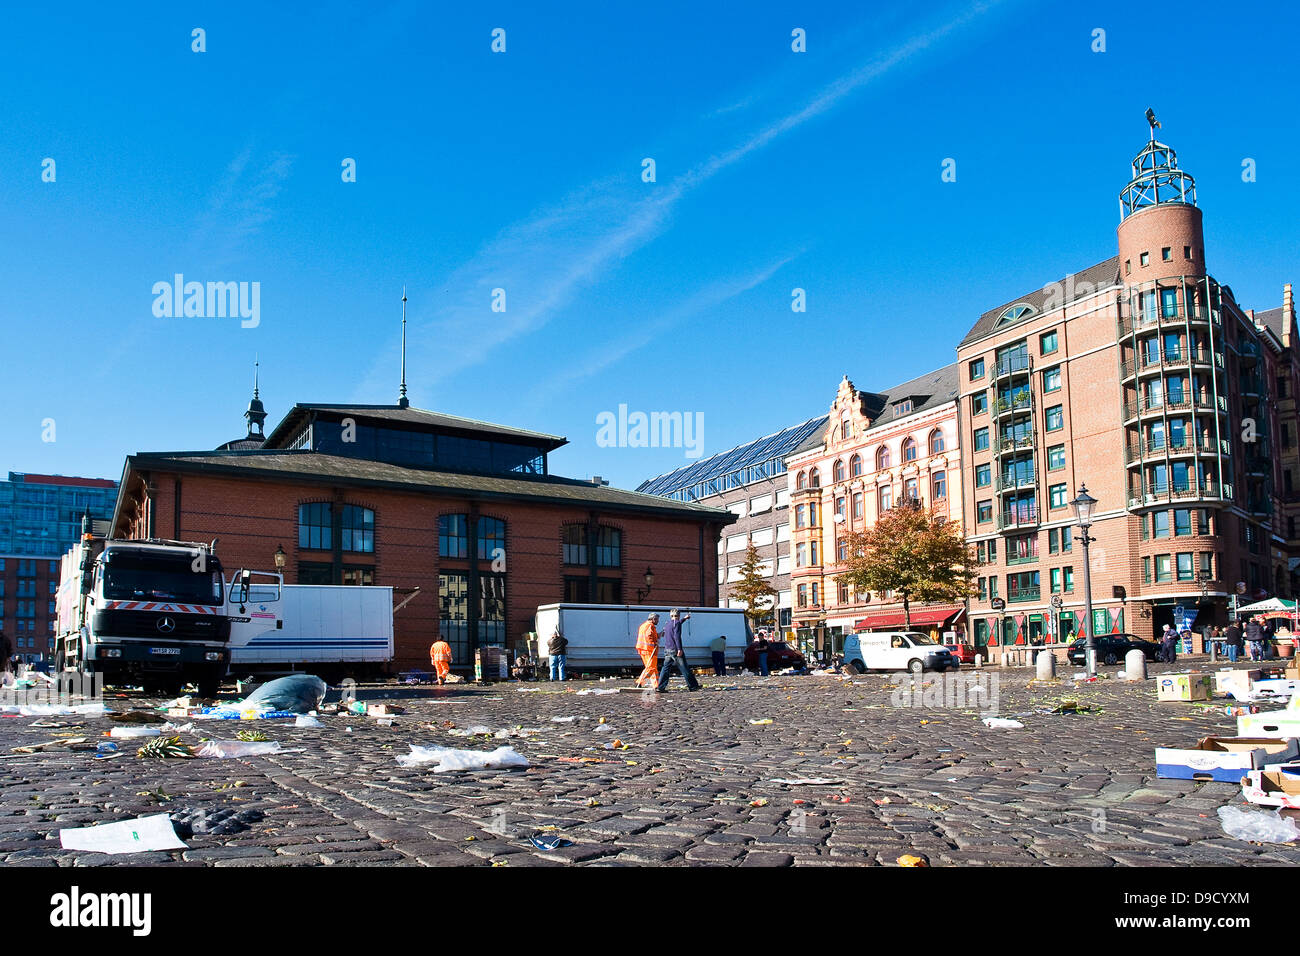 La limpieza en el mercado de pescado de Hamburgo Foto de stock